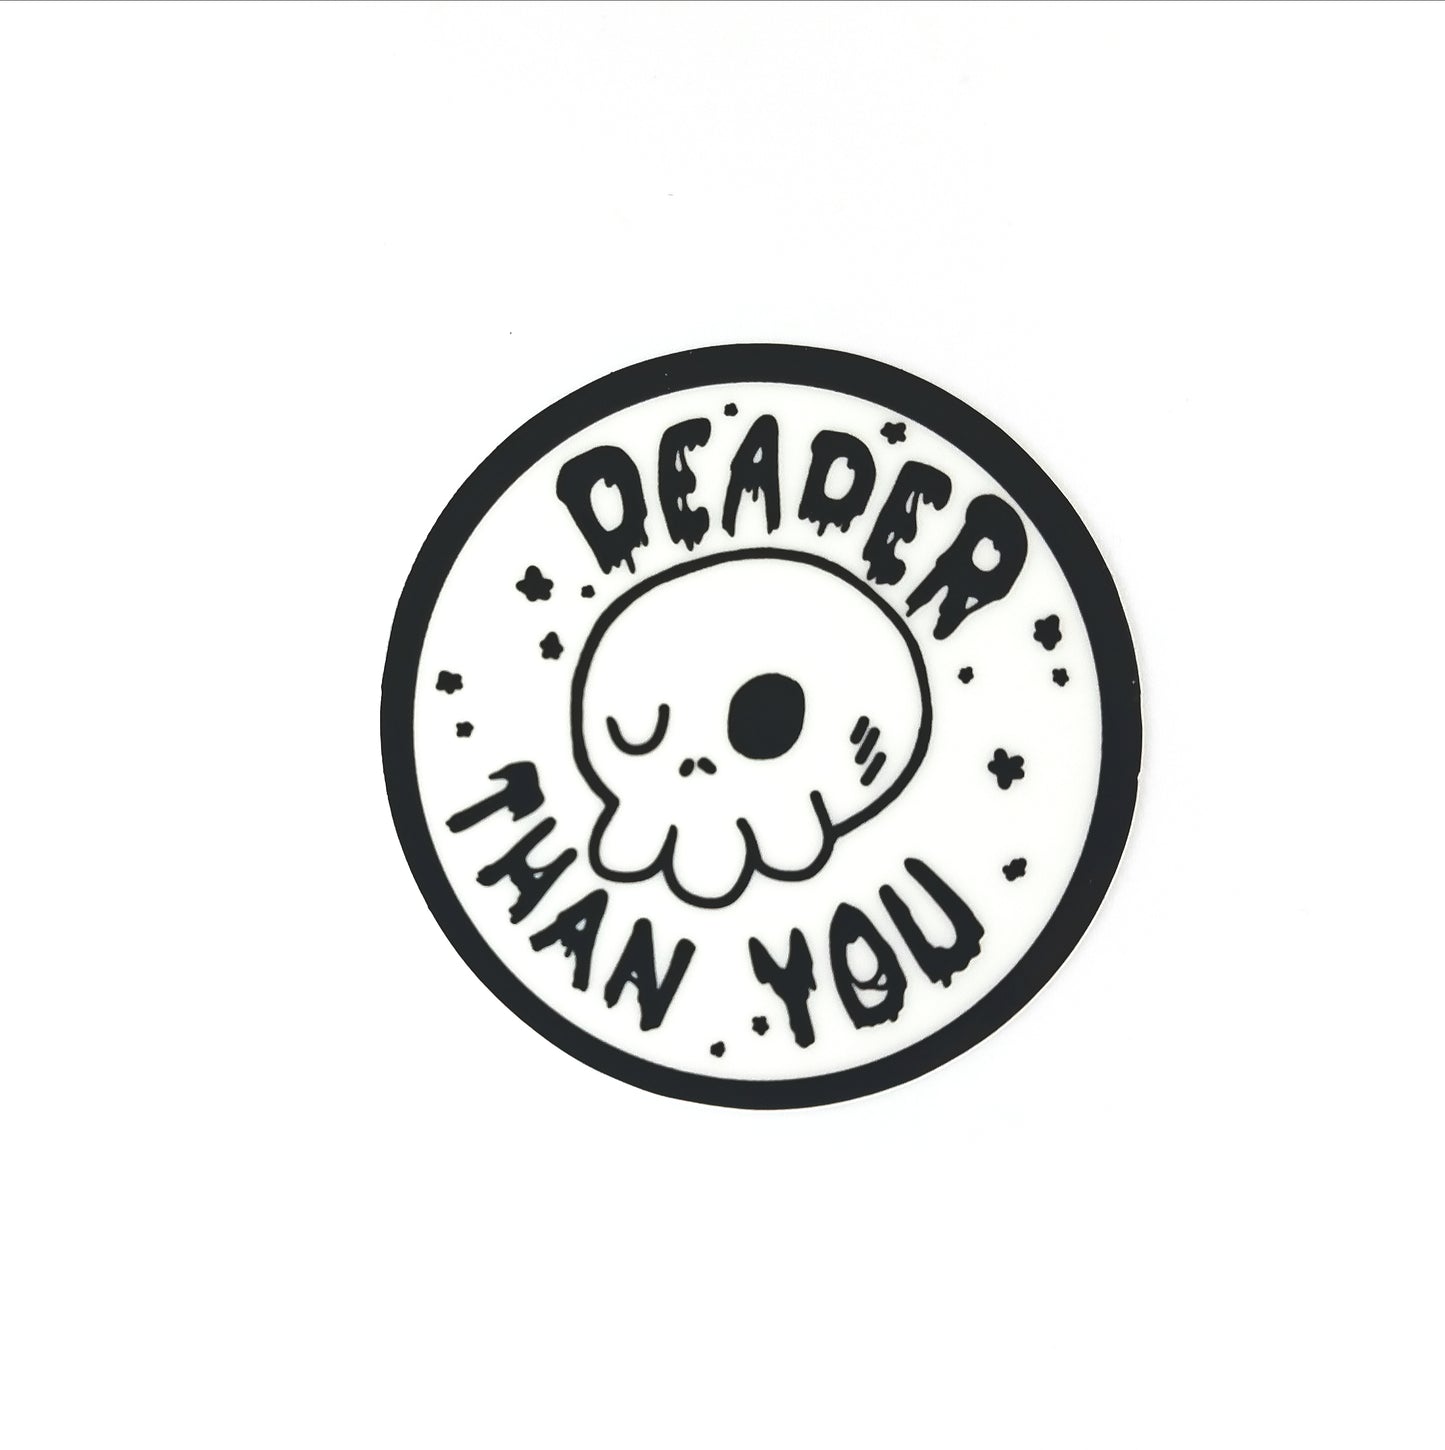 Deader Than You Sticker (Glow In The Dark)